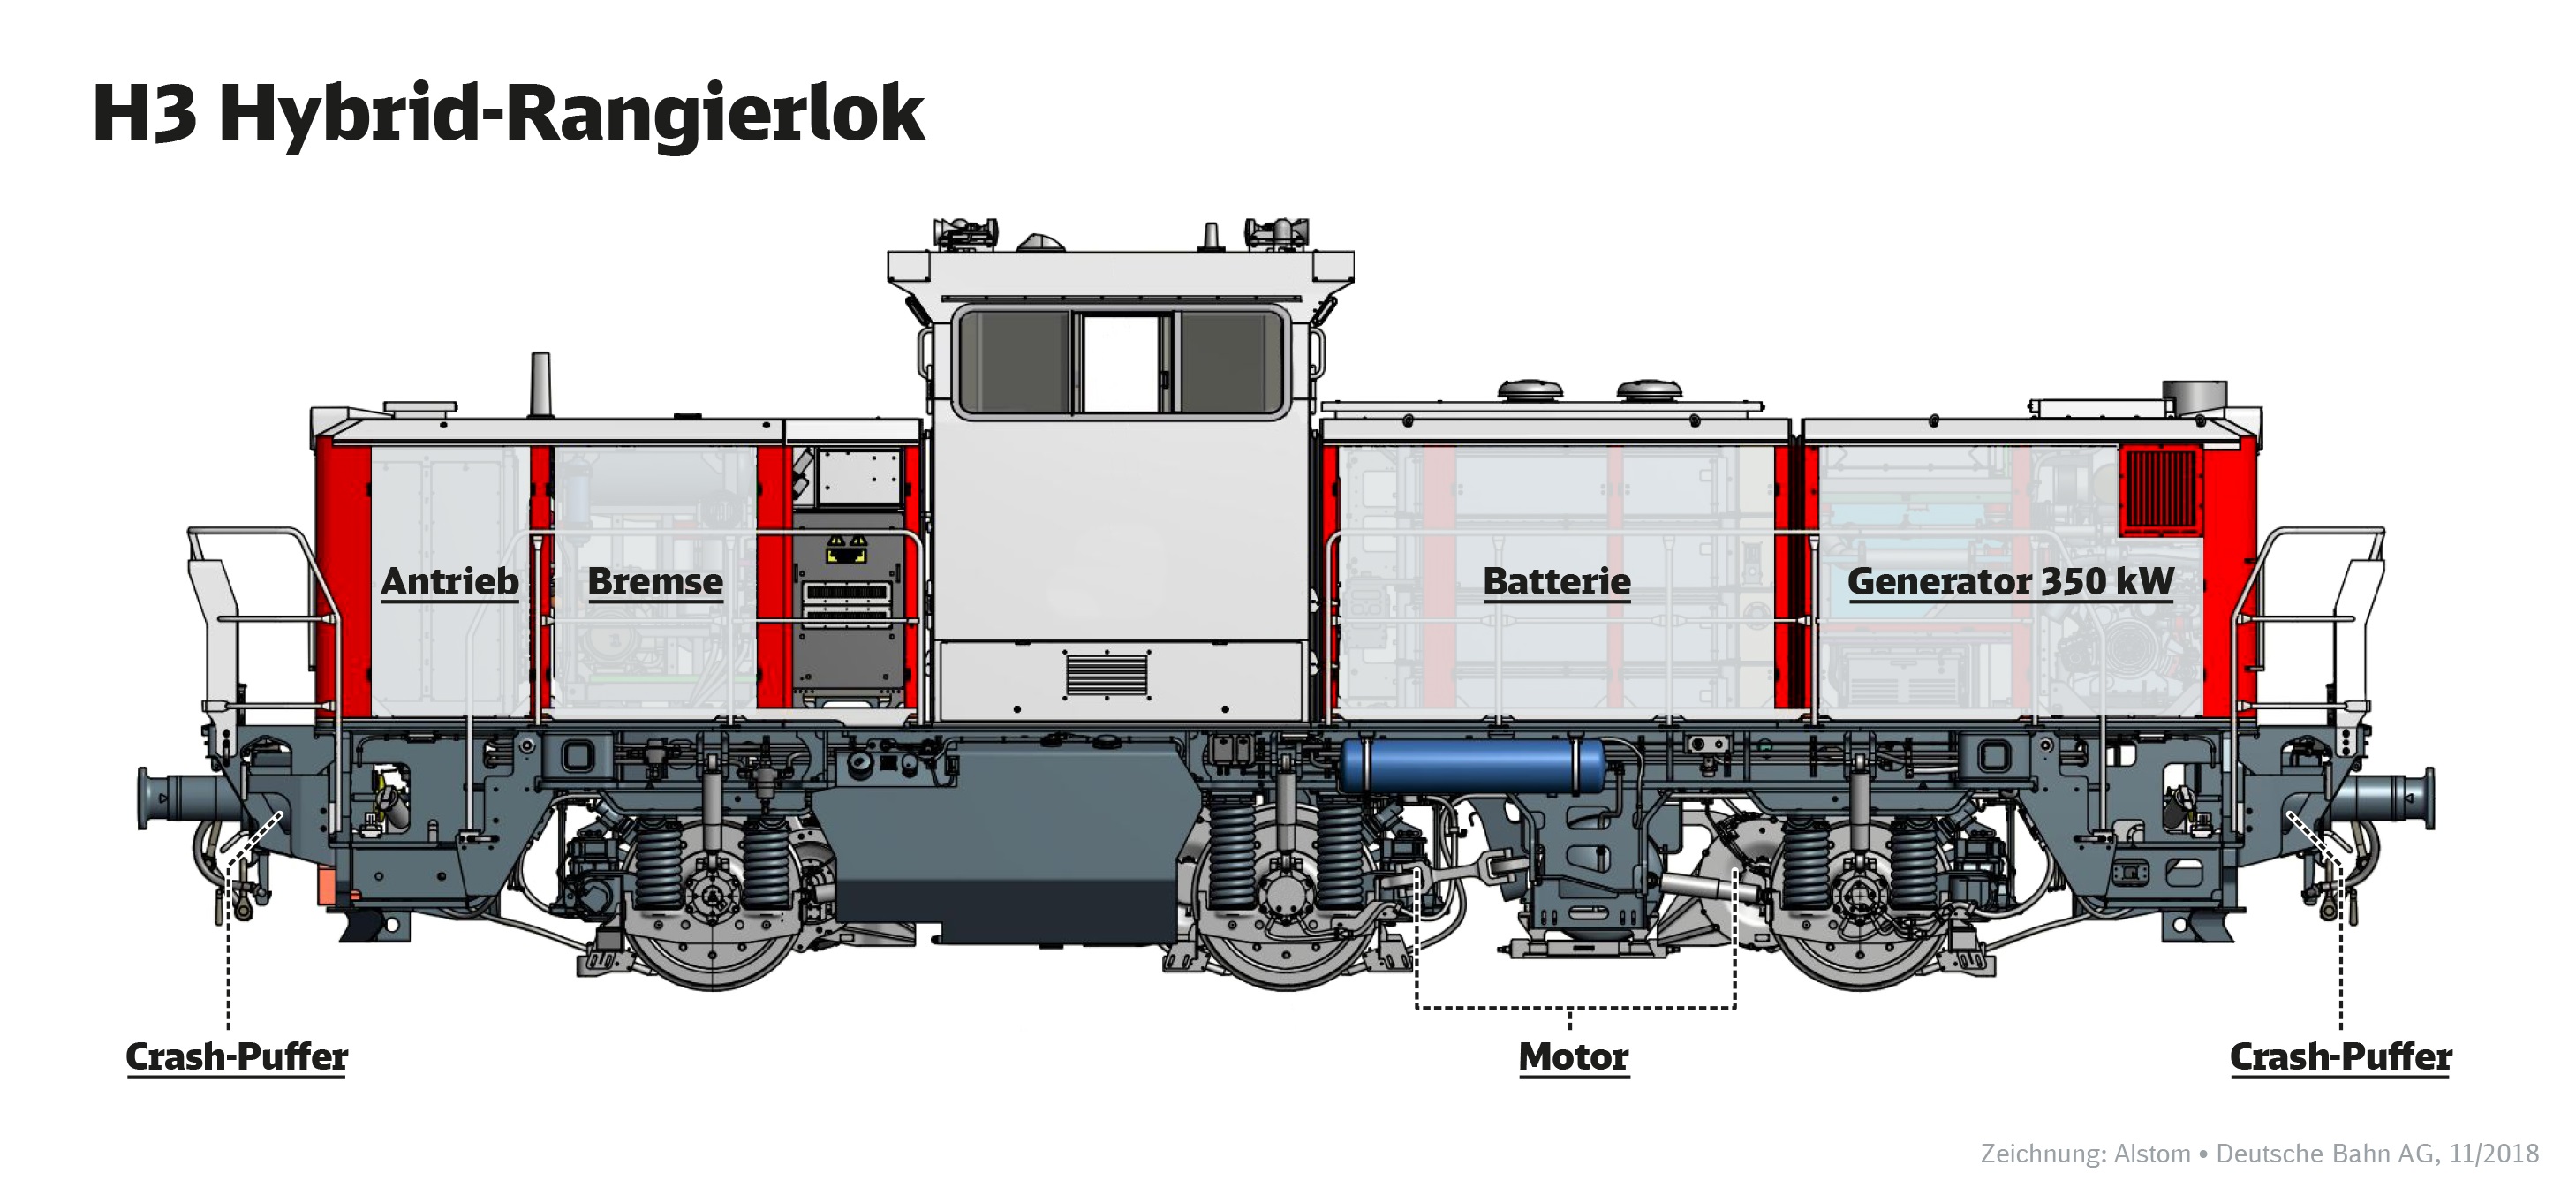 Zeichnung H3 Hybrid-Rangierlok von Alstom